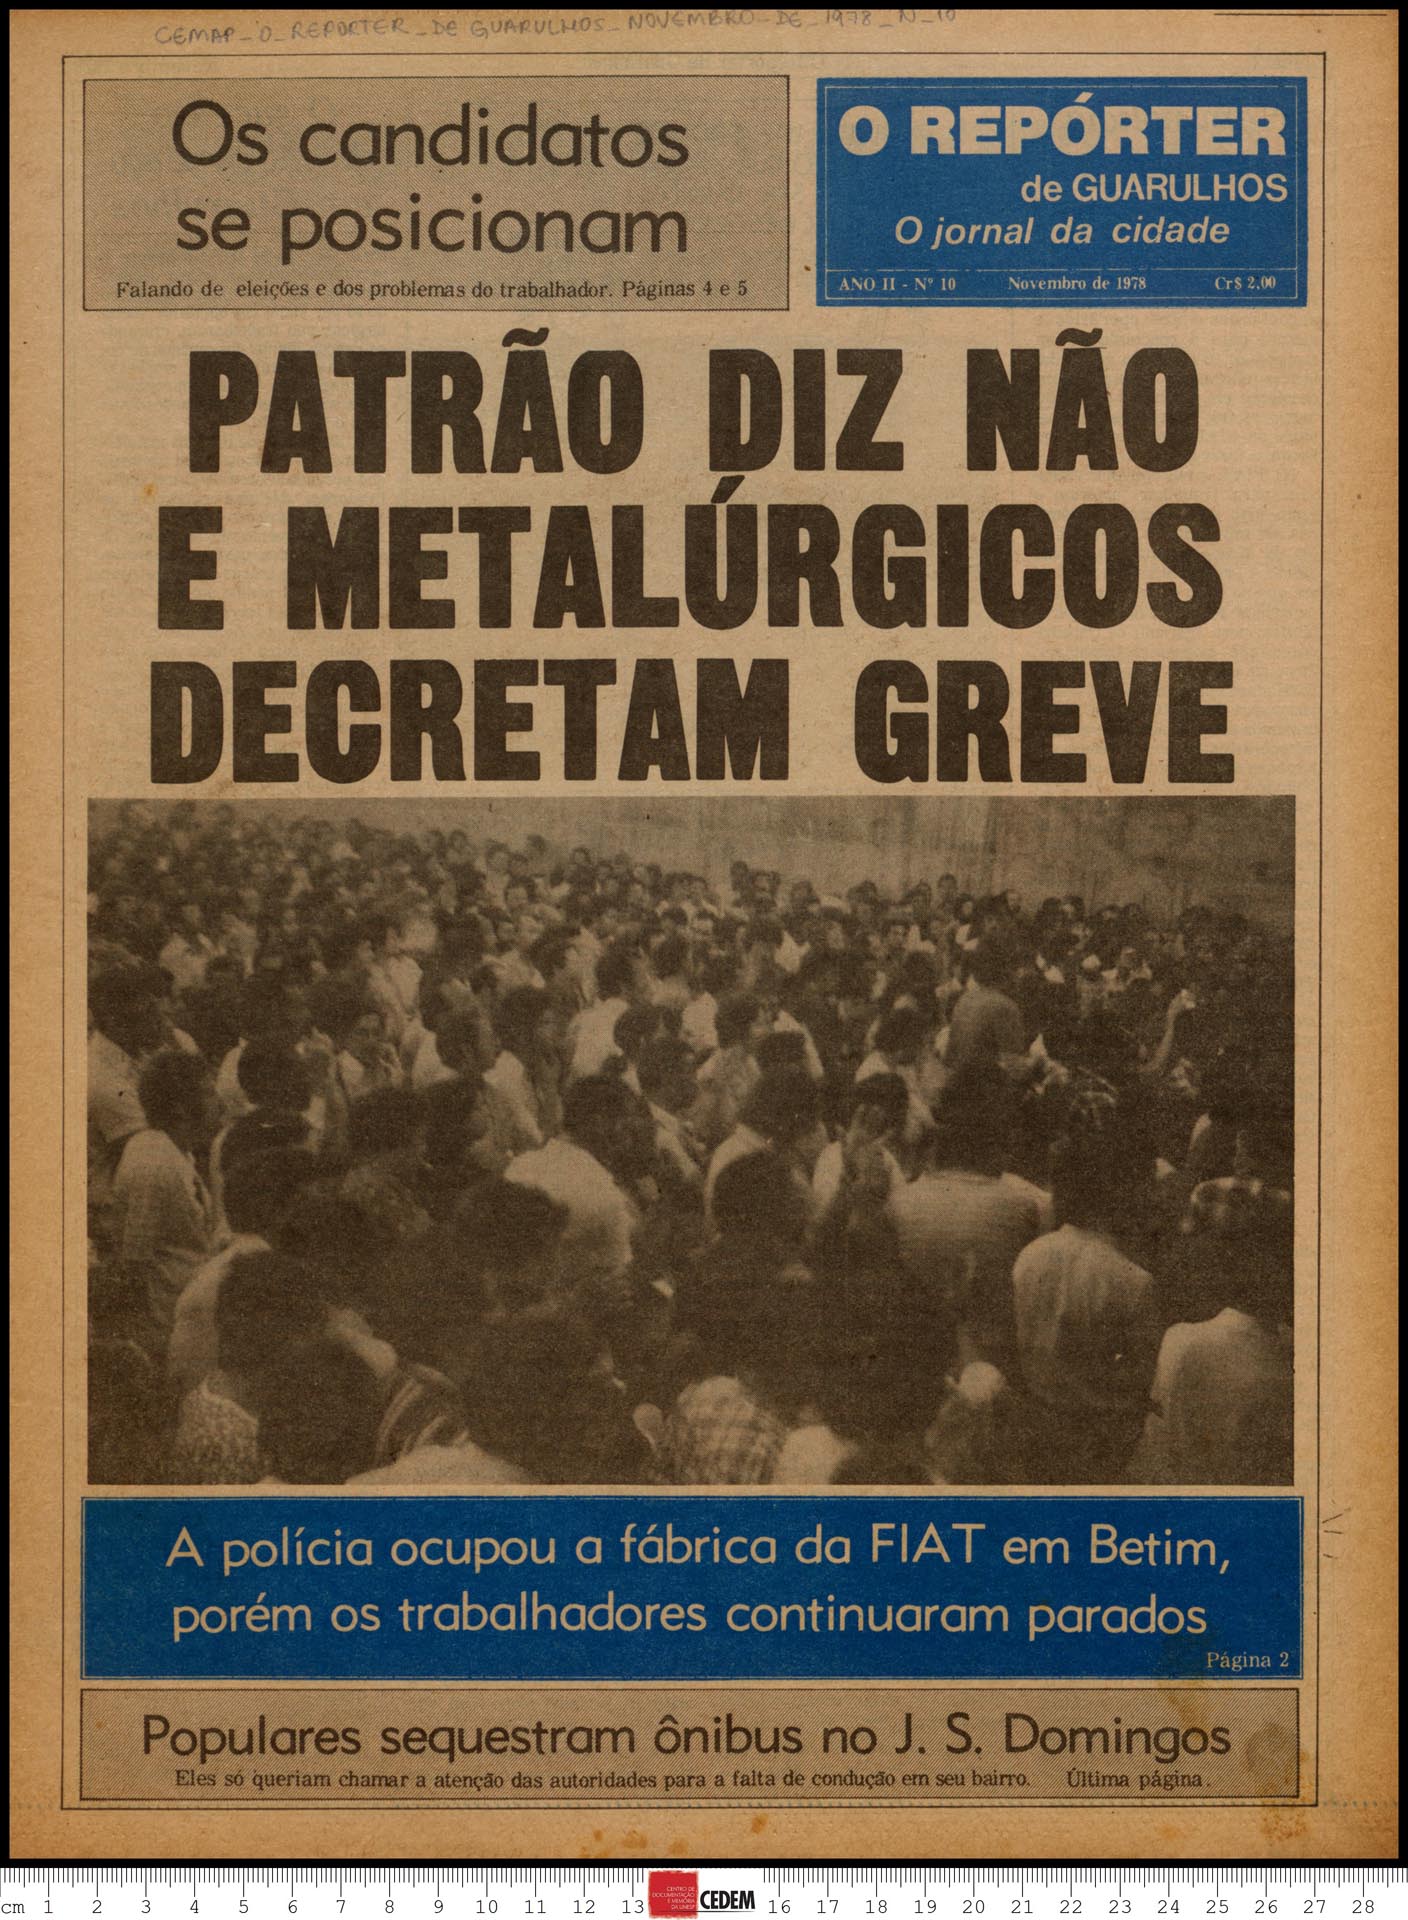 O reportér de Guarulhos - 10 - nov. 1978